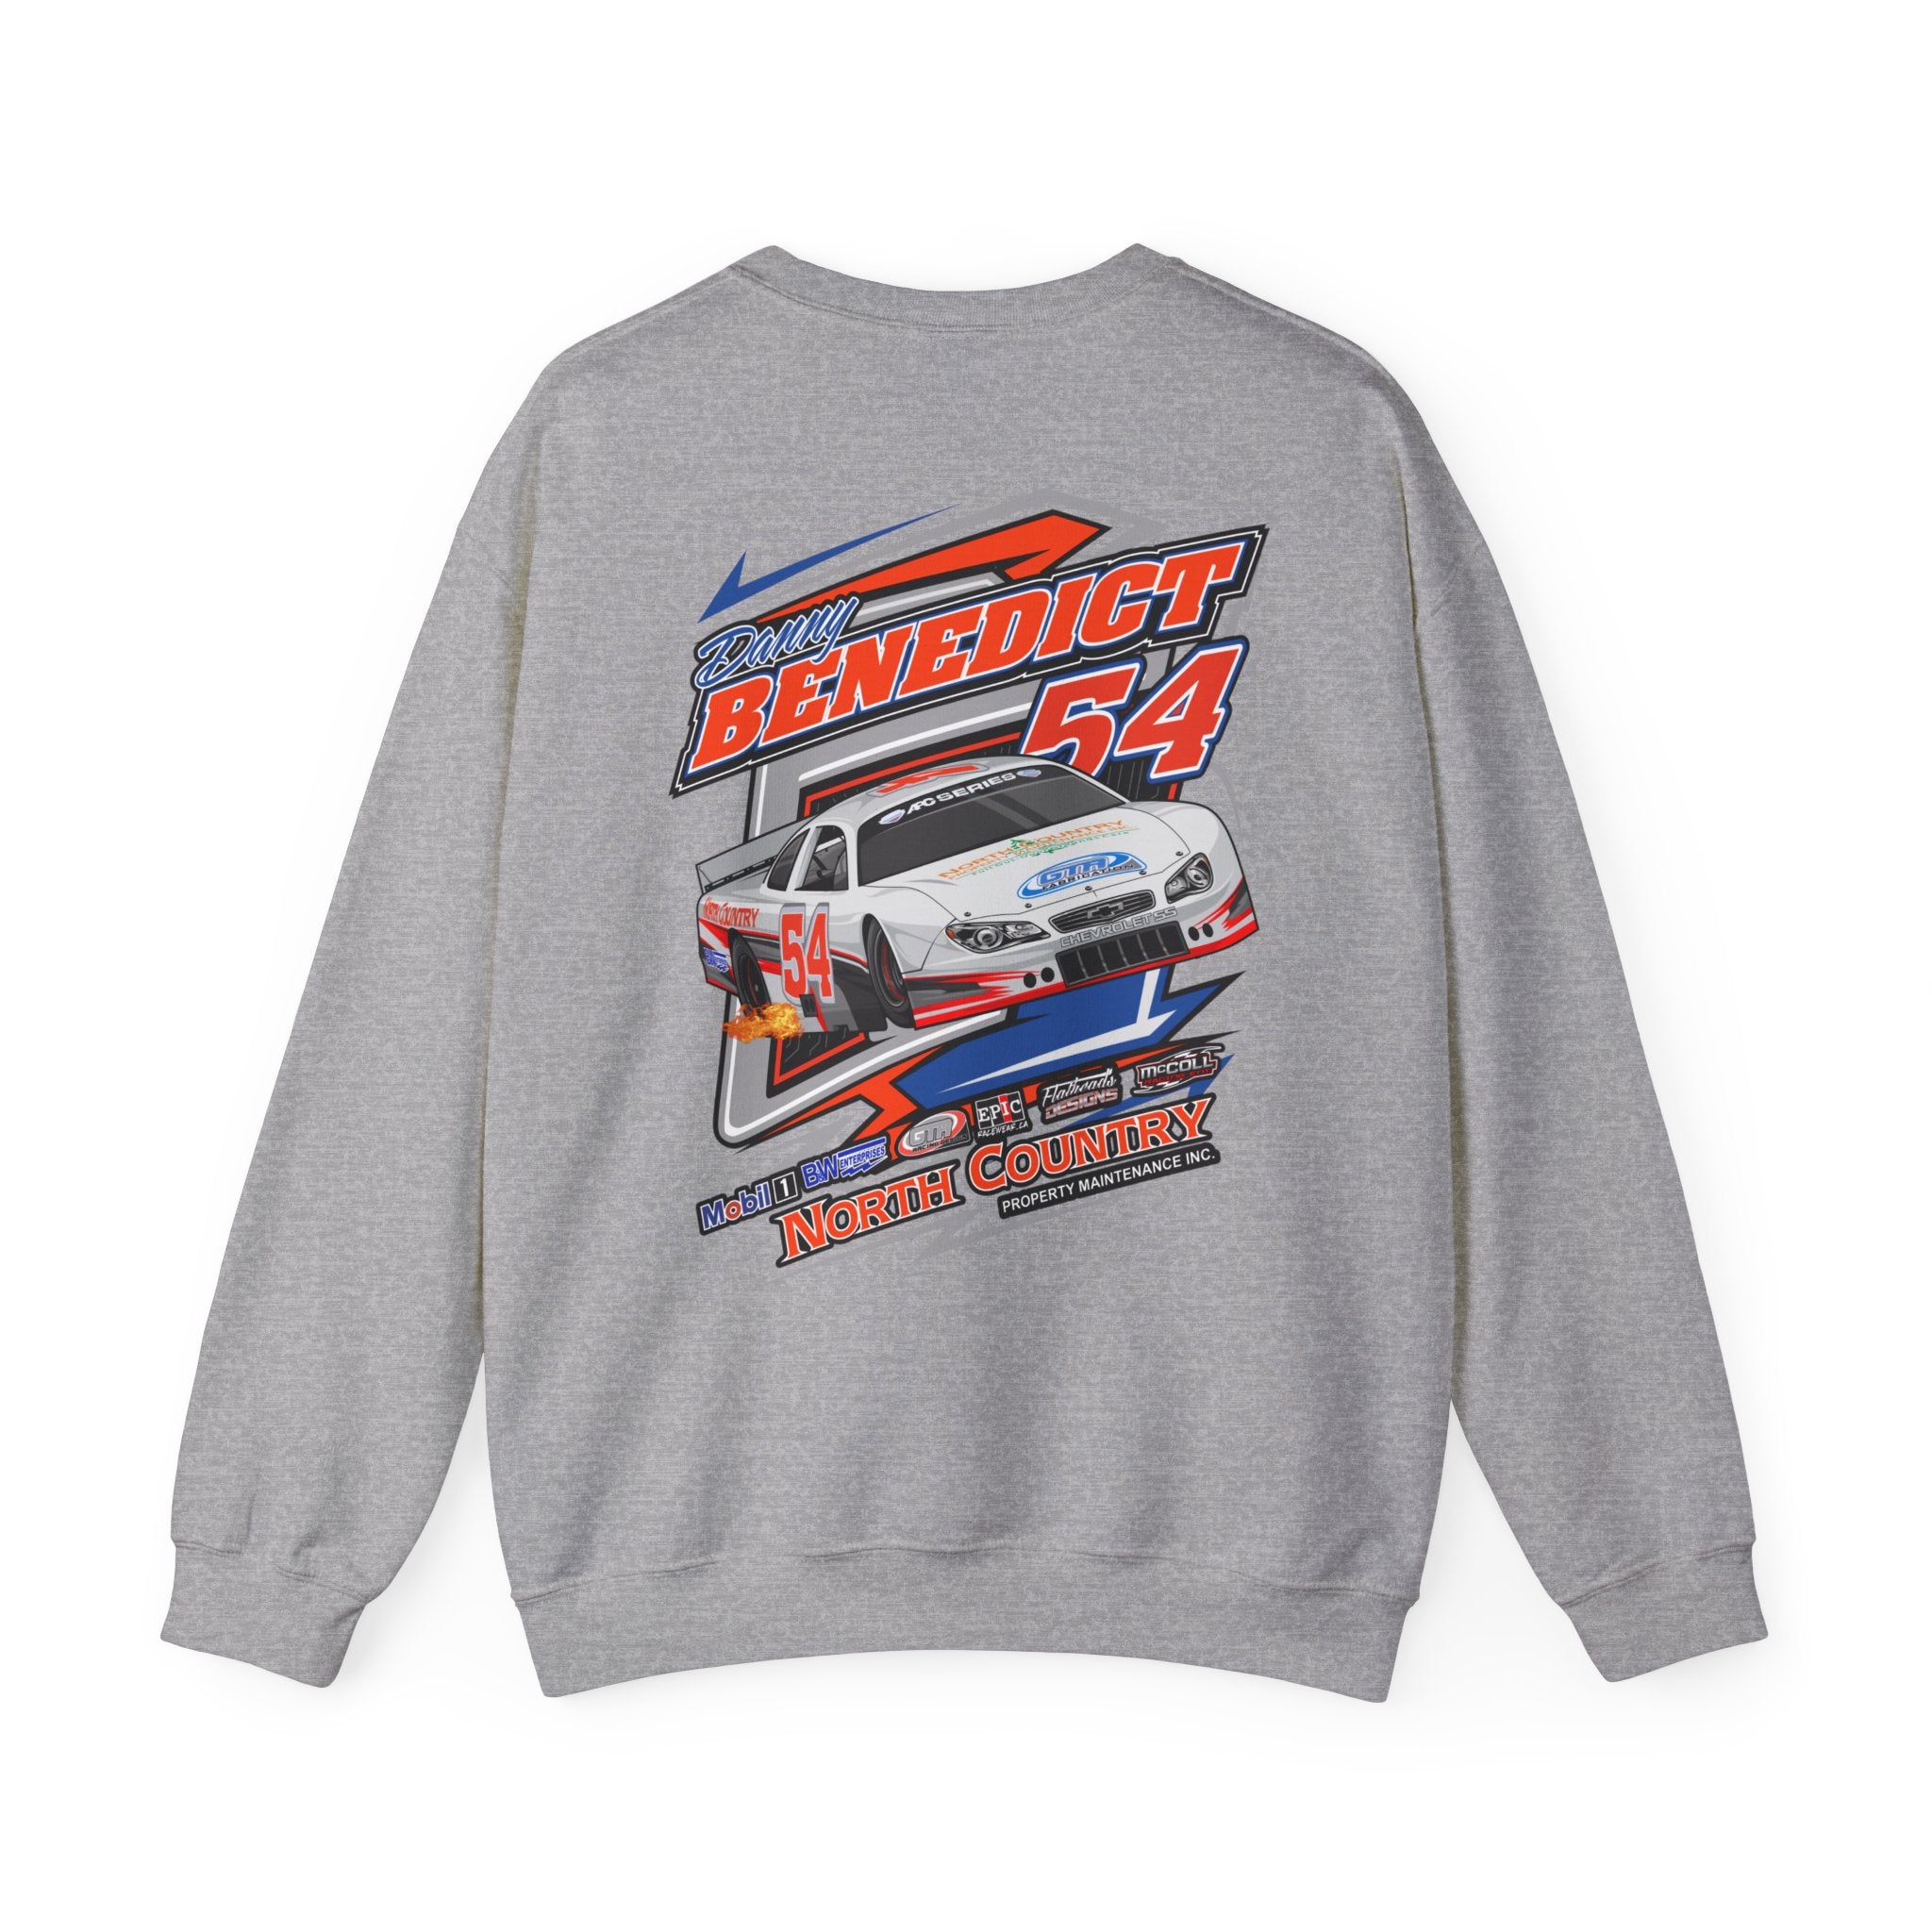 Danny Benedict Racing Crew Neck Sweater